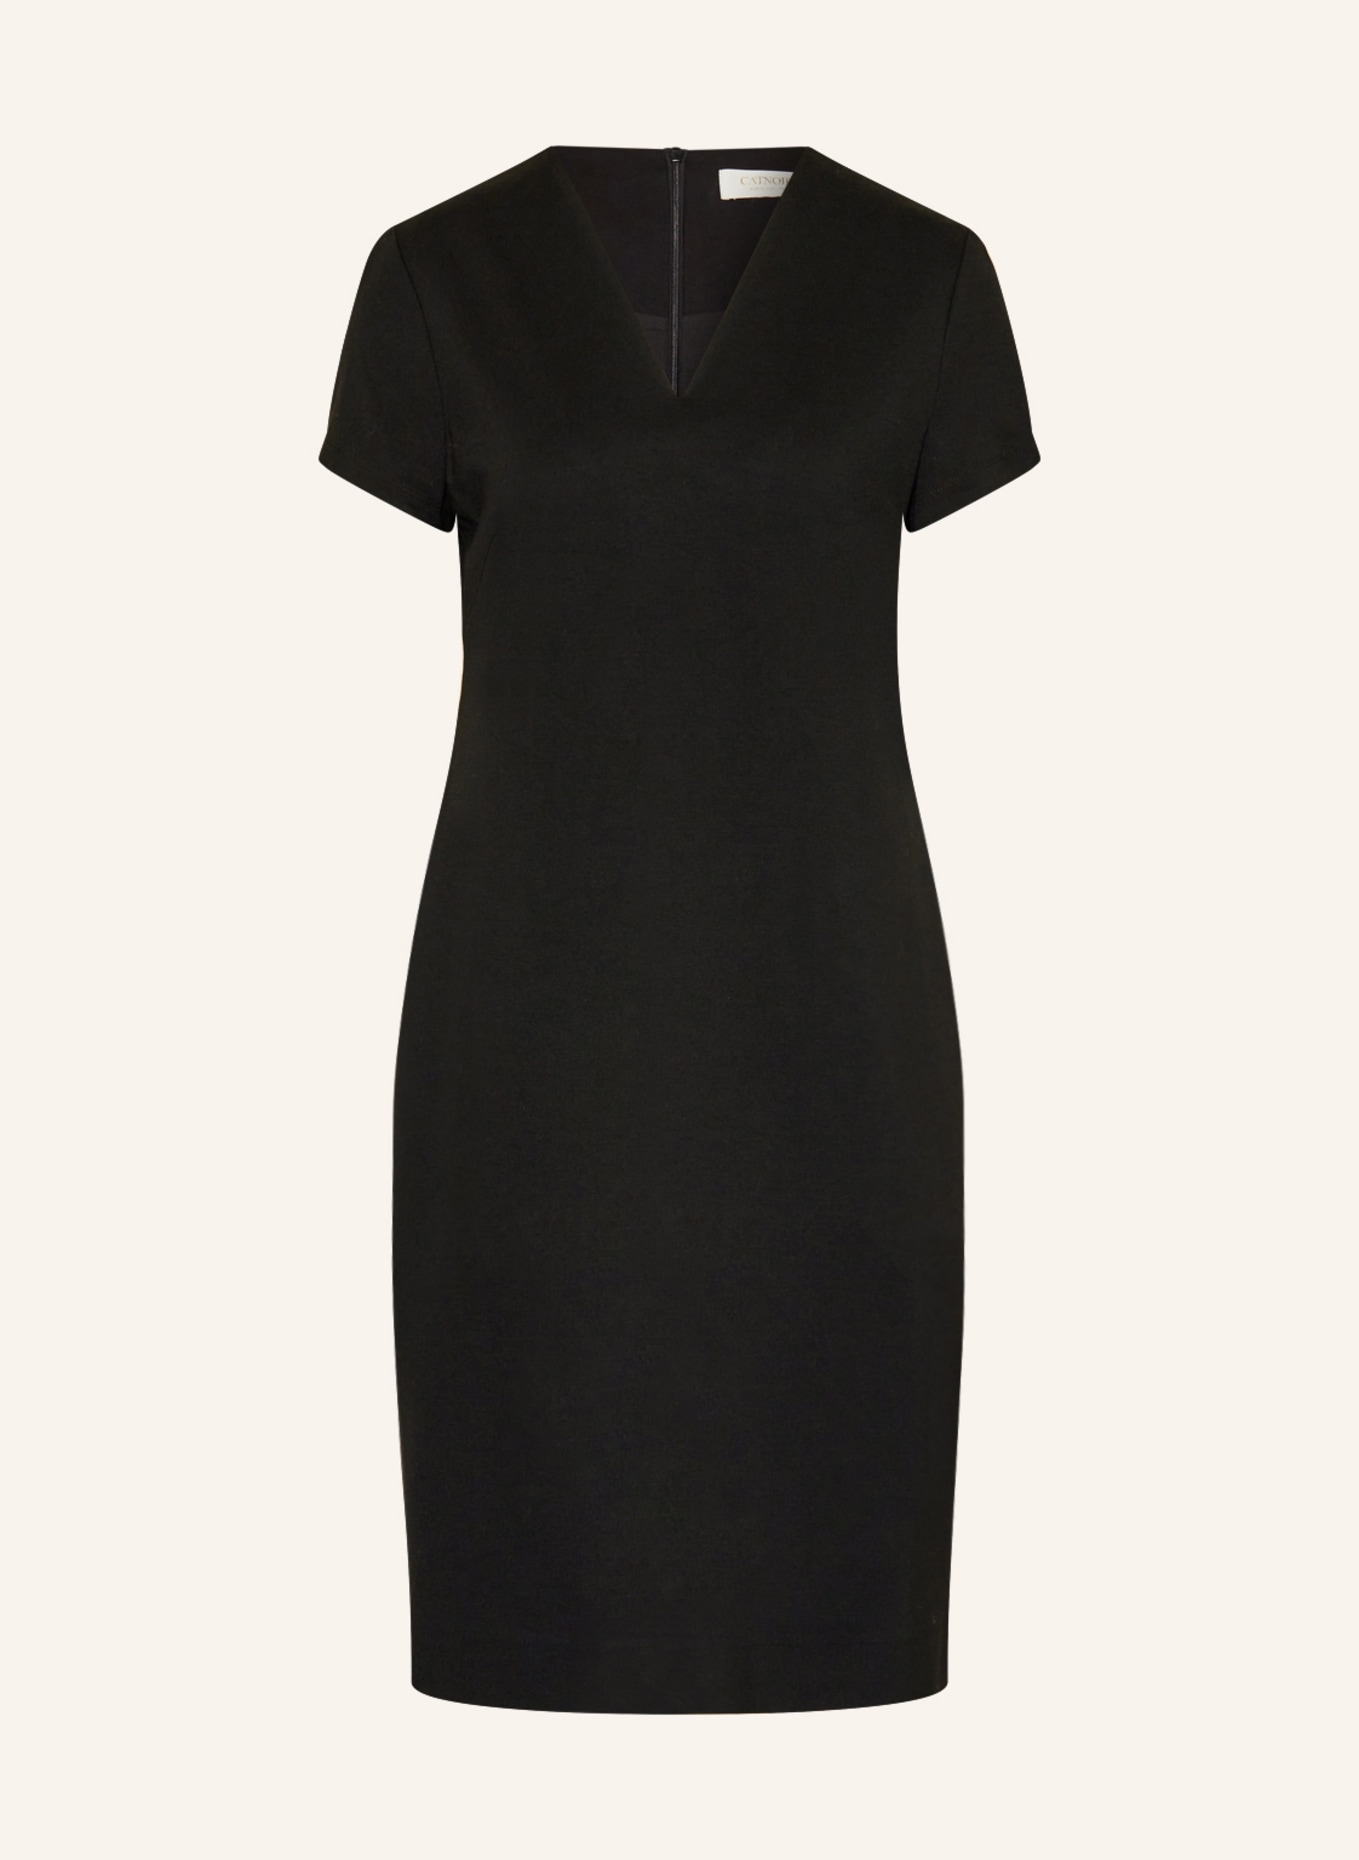 CATNOIR Dress, Color: BLACK (Image 1)